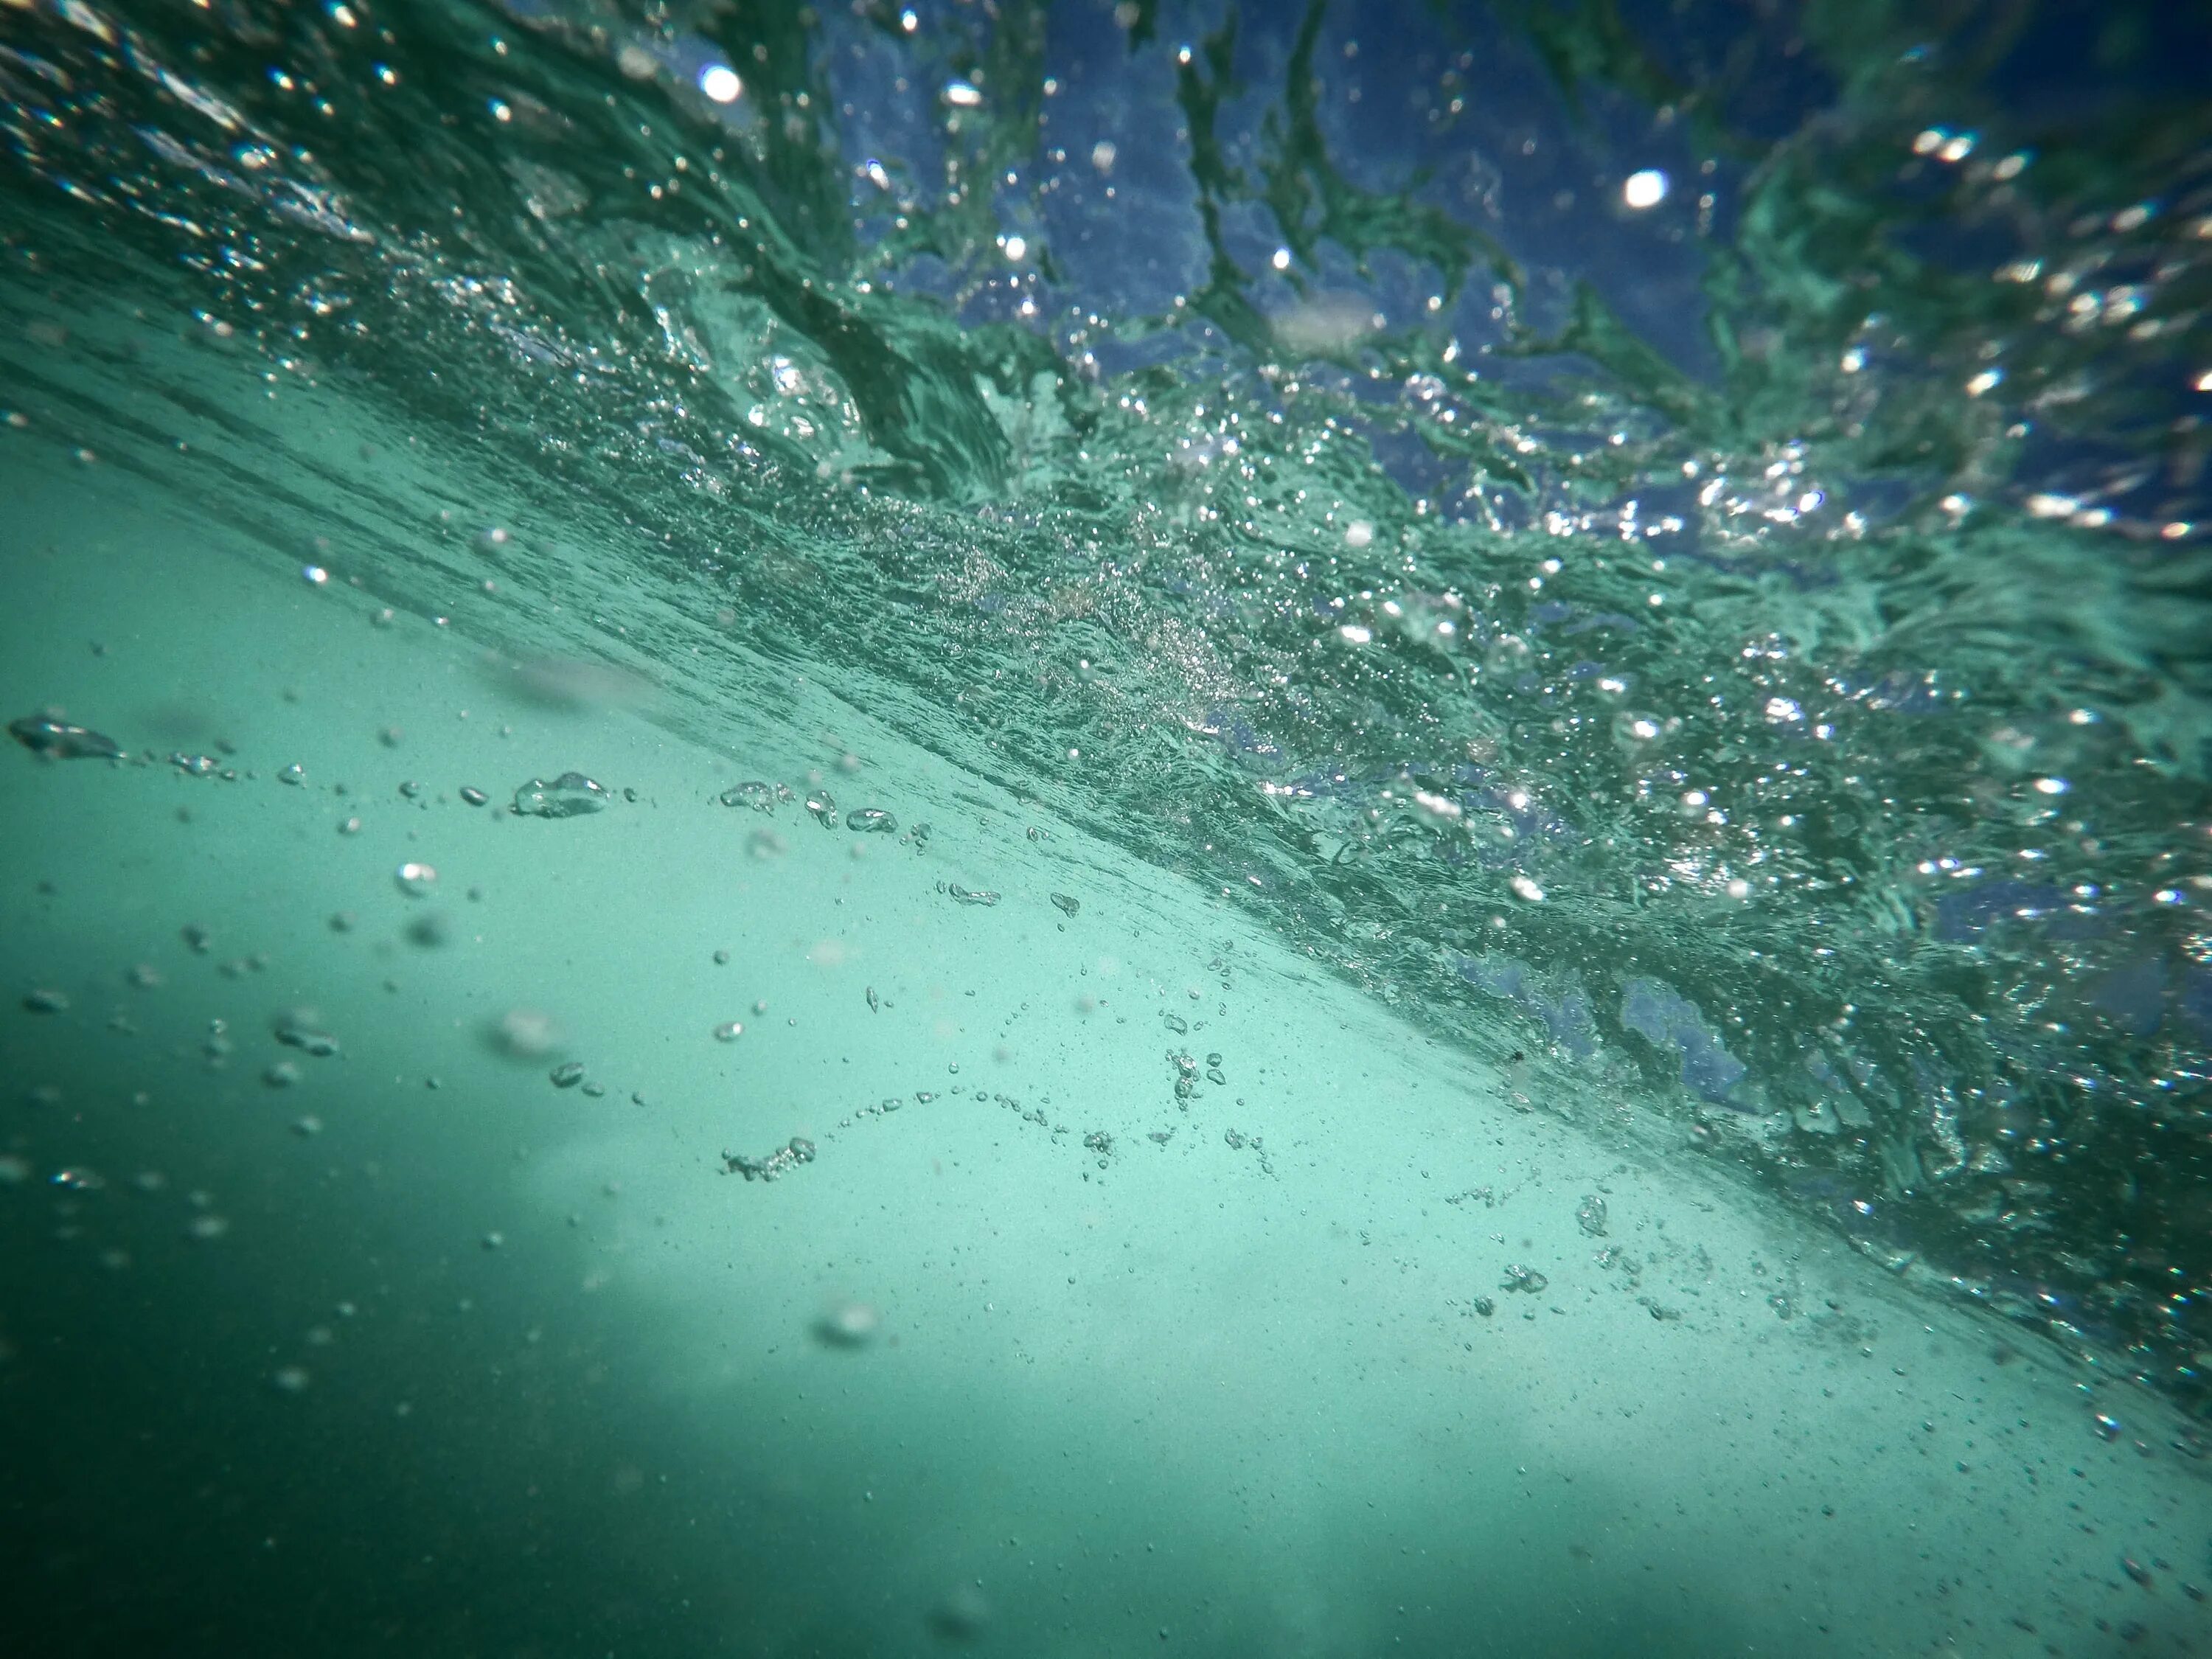 Пузыри под водой. Воздух под водой. Пузырьки воздуха под водой. Текстура воды с пузырьками. Вода без движения